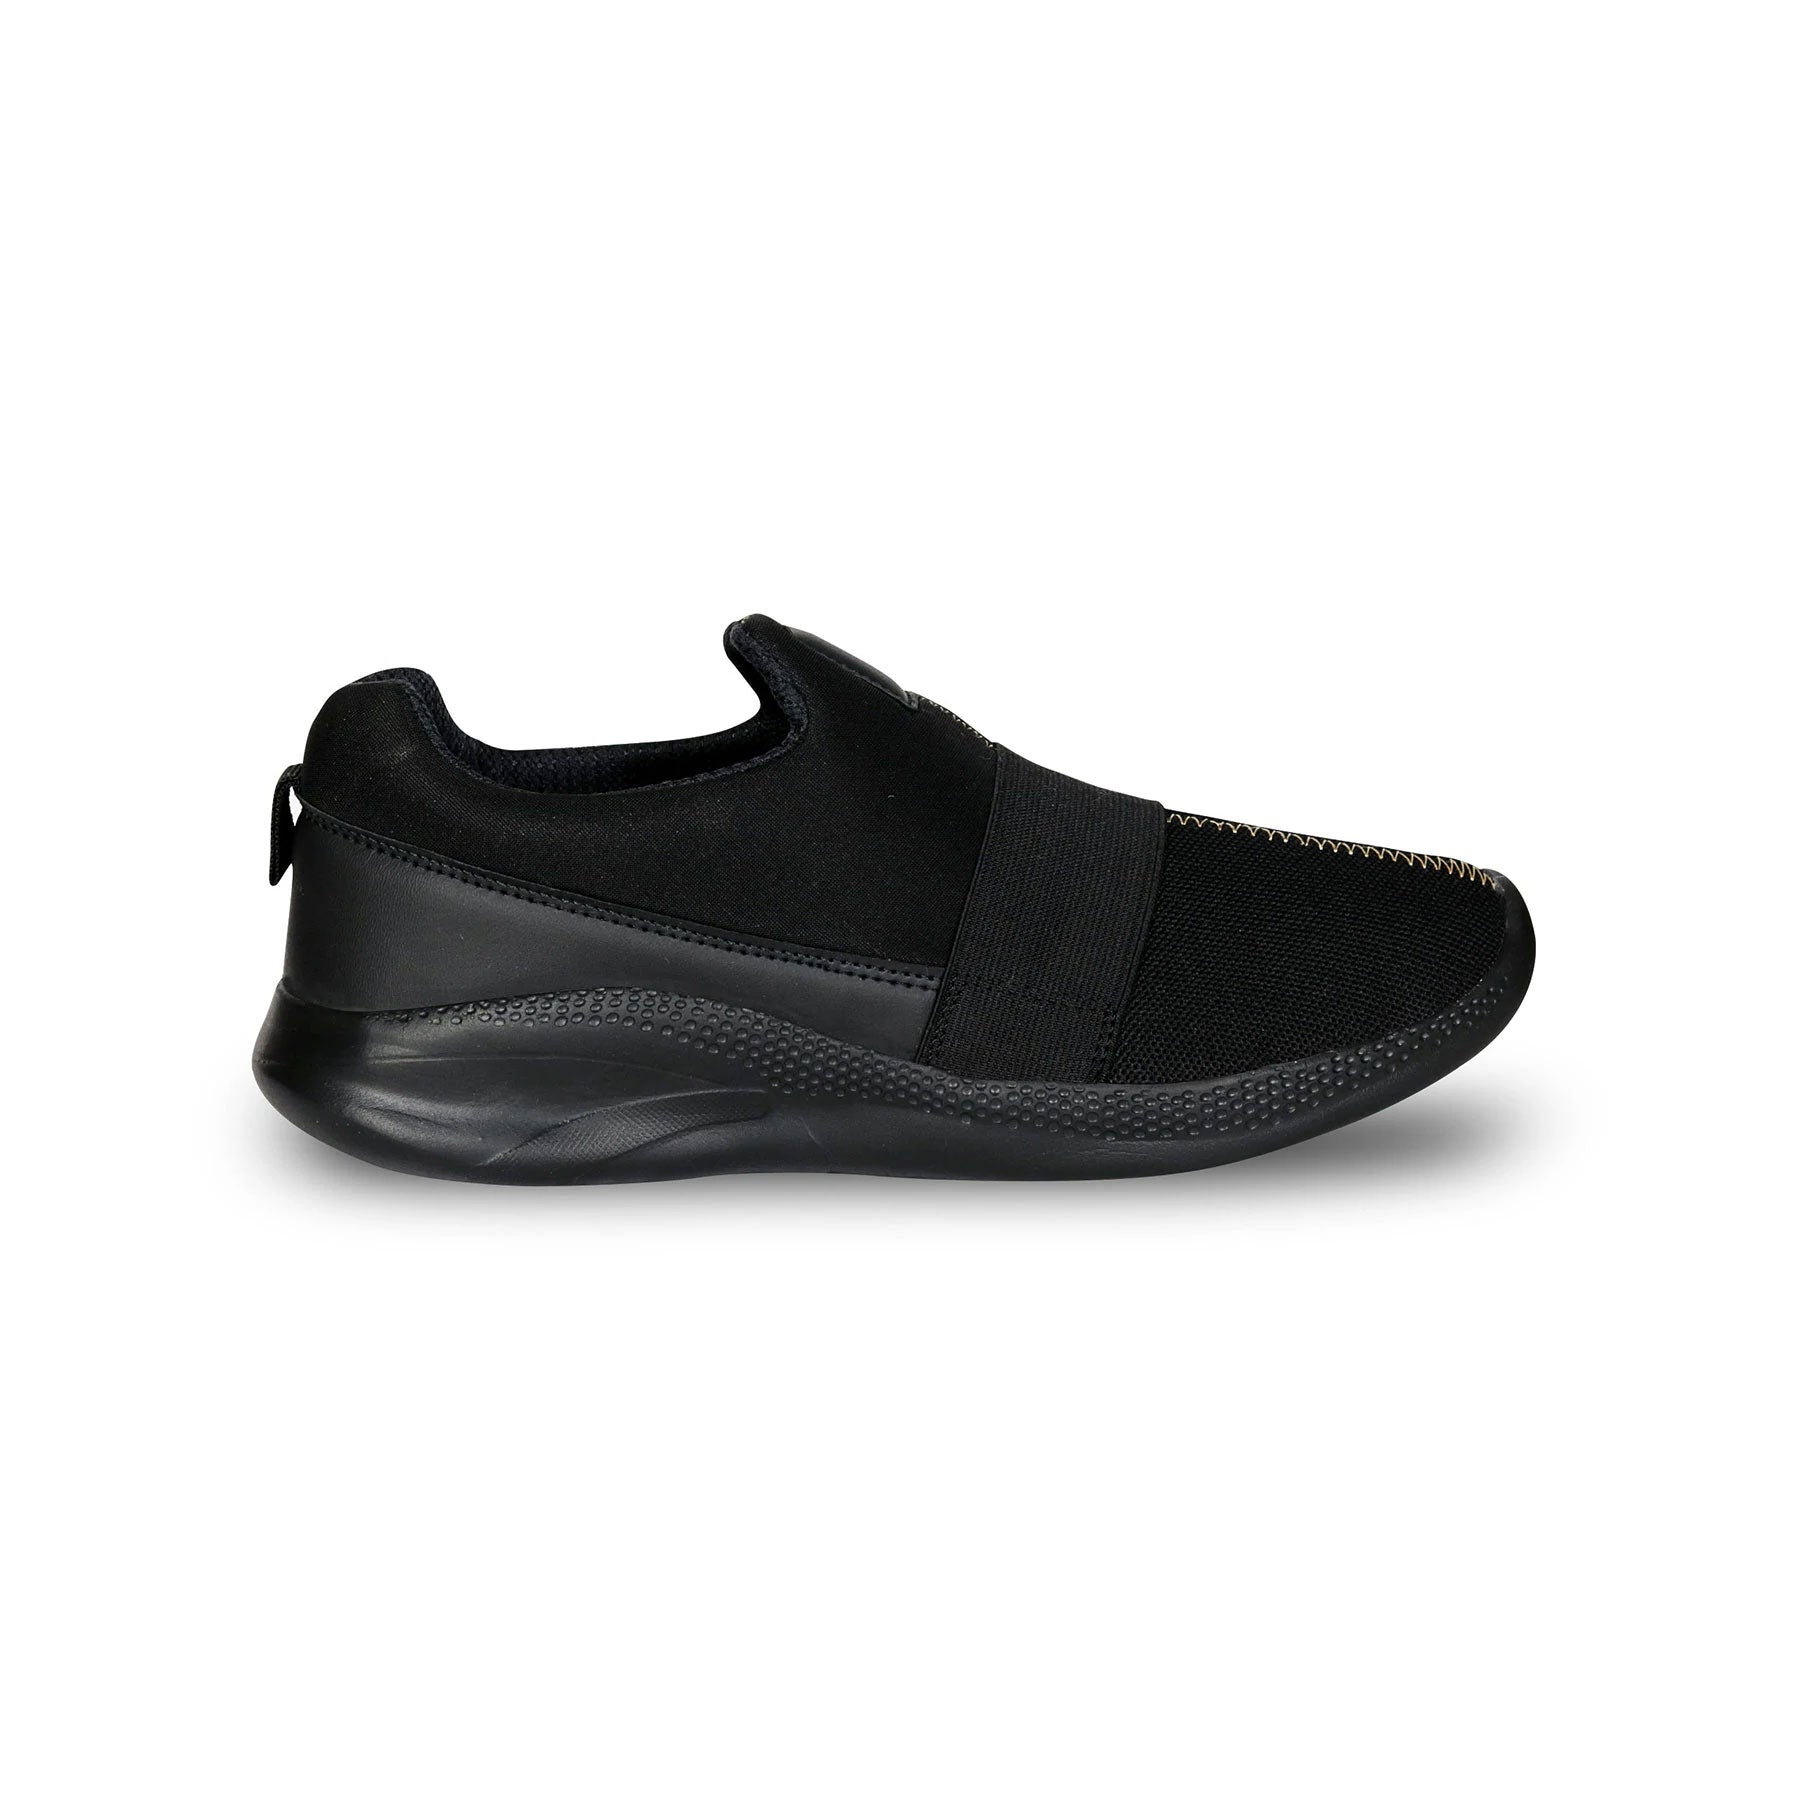 Simba Running Shoes For Men (Black)